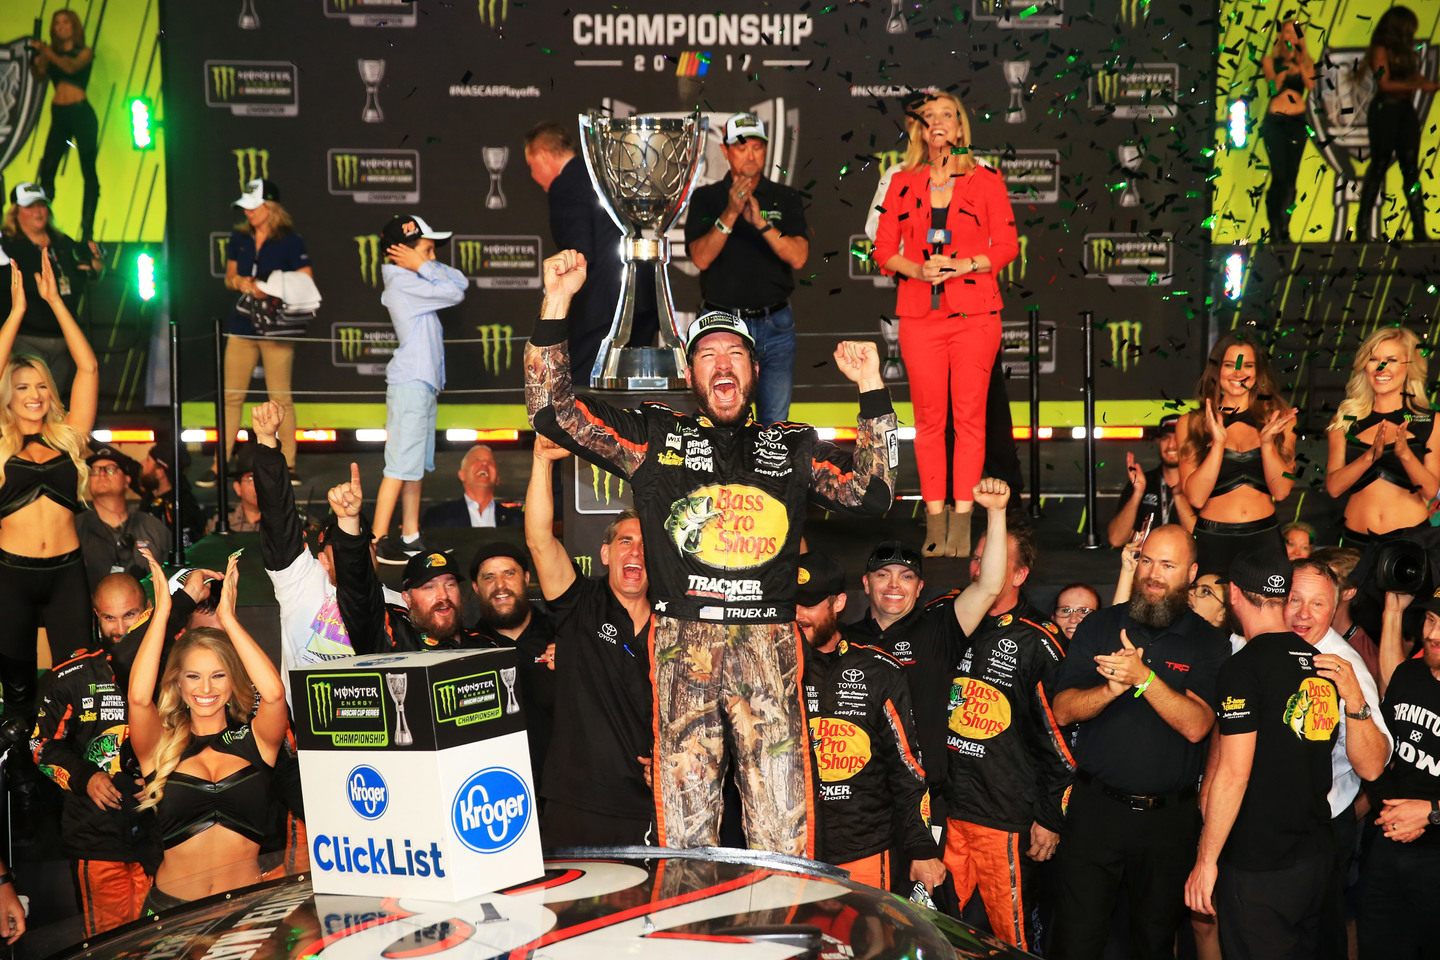 Мартин Труэкс отмечает победу в чемпионате NASCAR © NASCAR